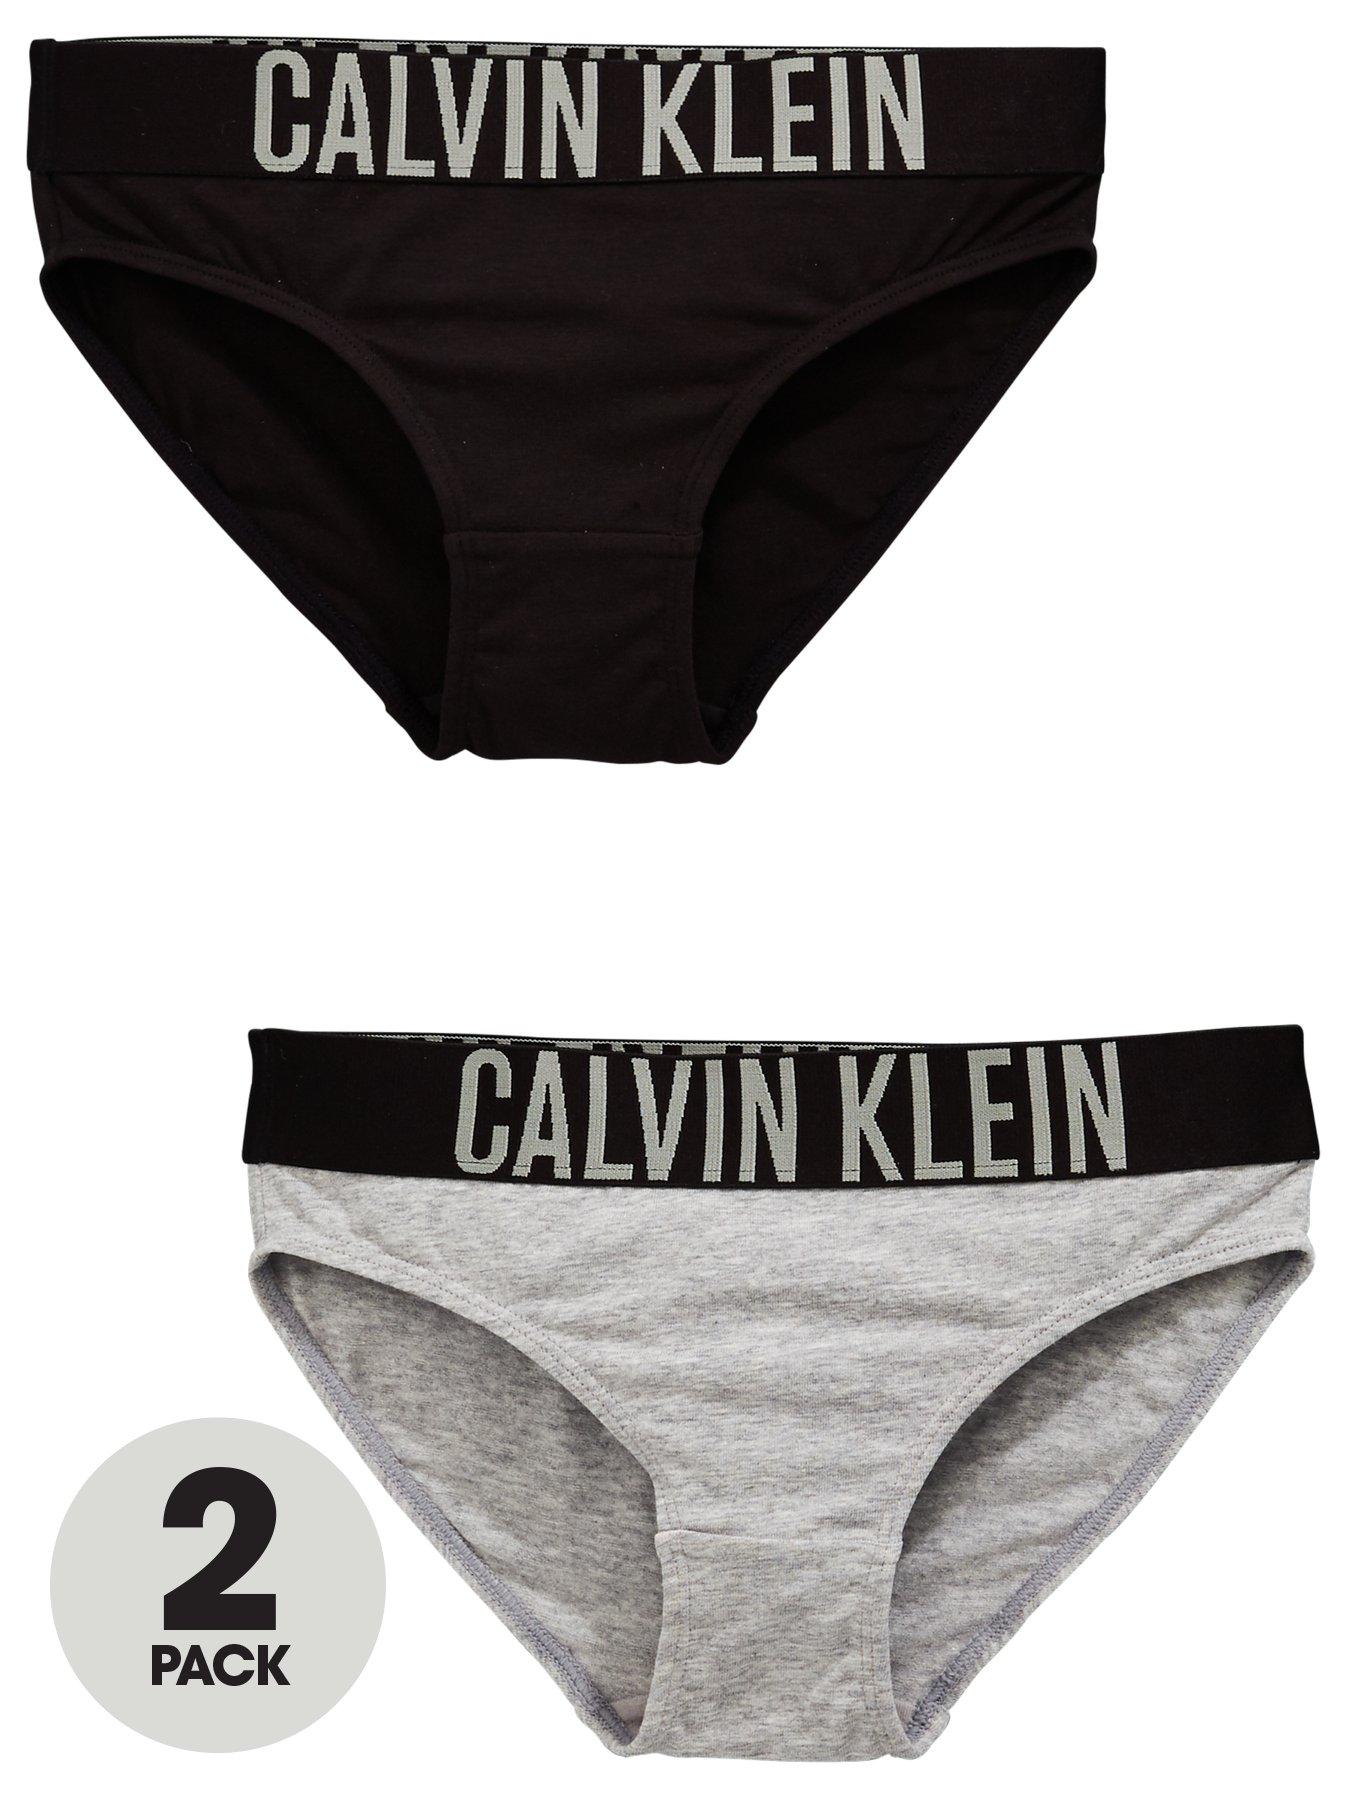 calvin klein underwear girl